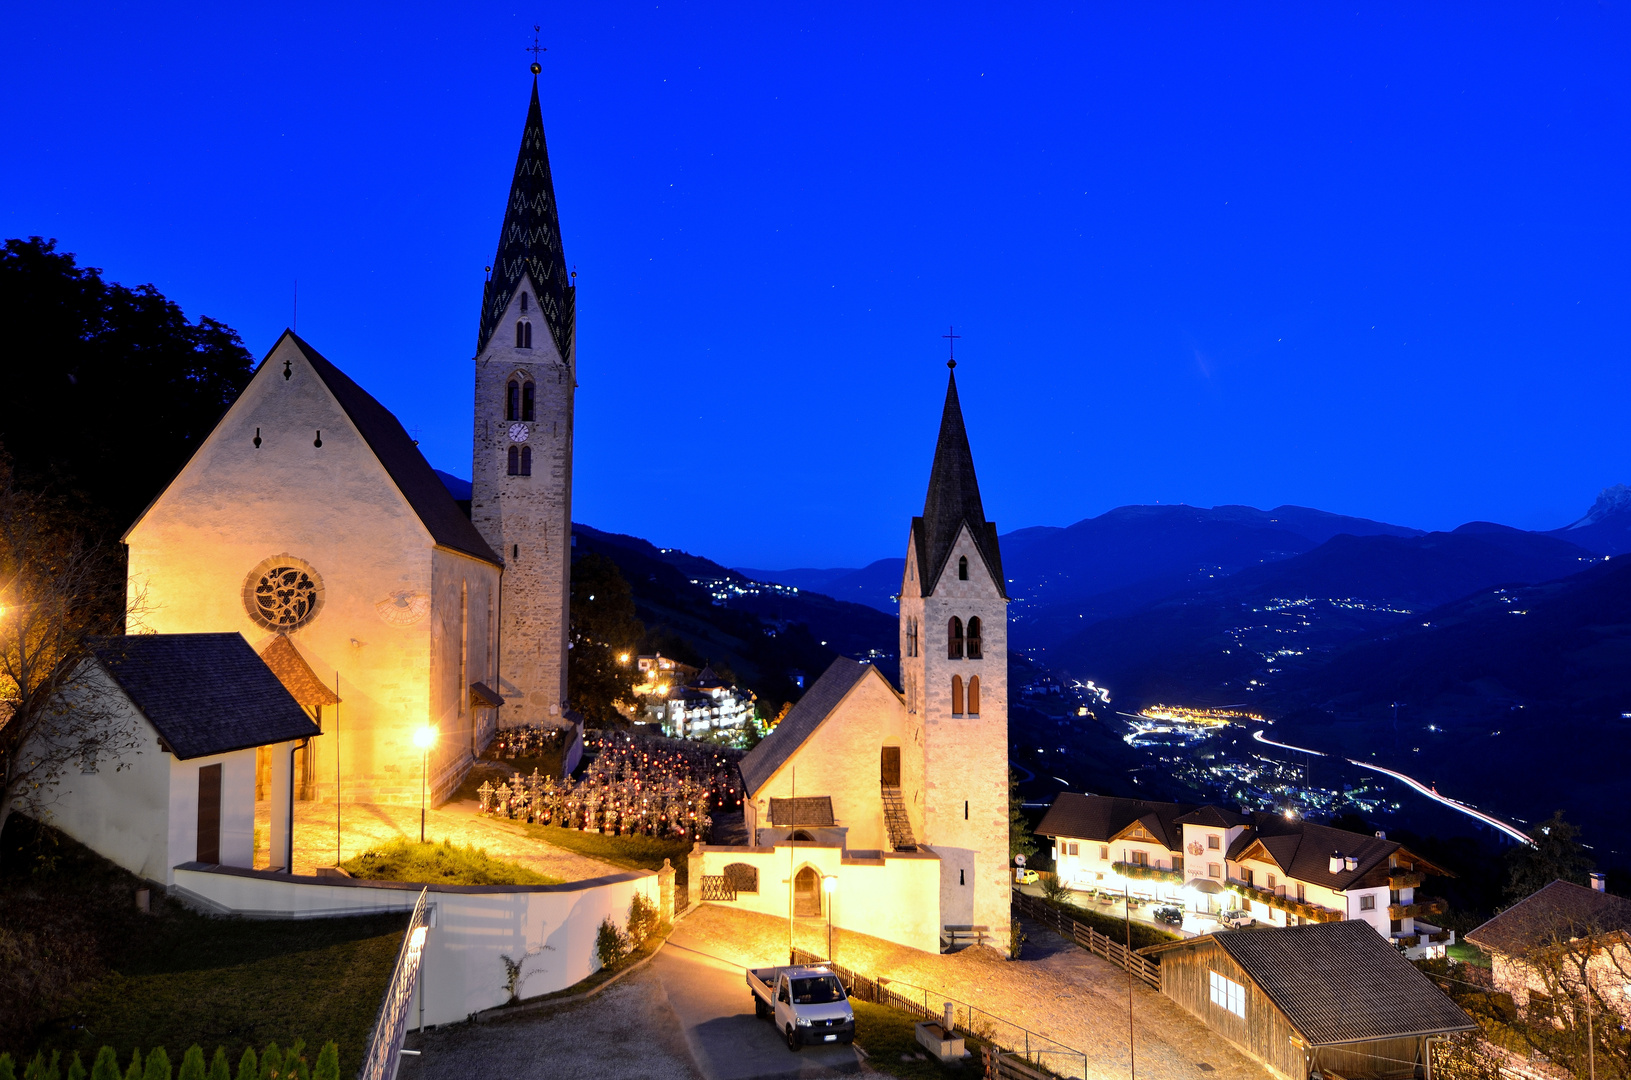 Villanders in Südtirol bei Nacht